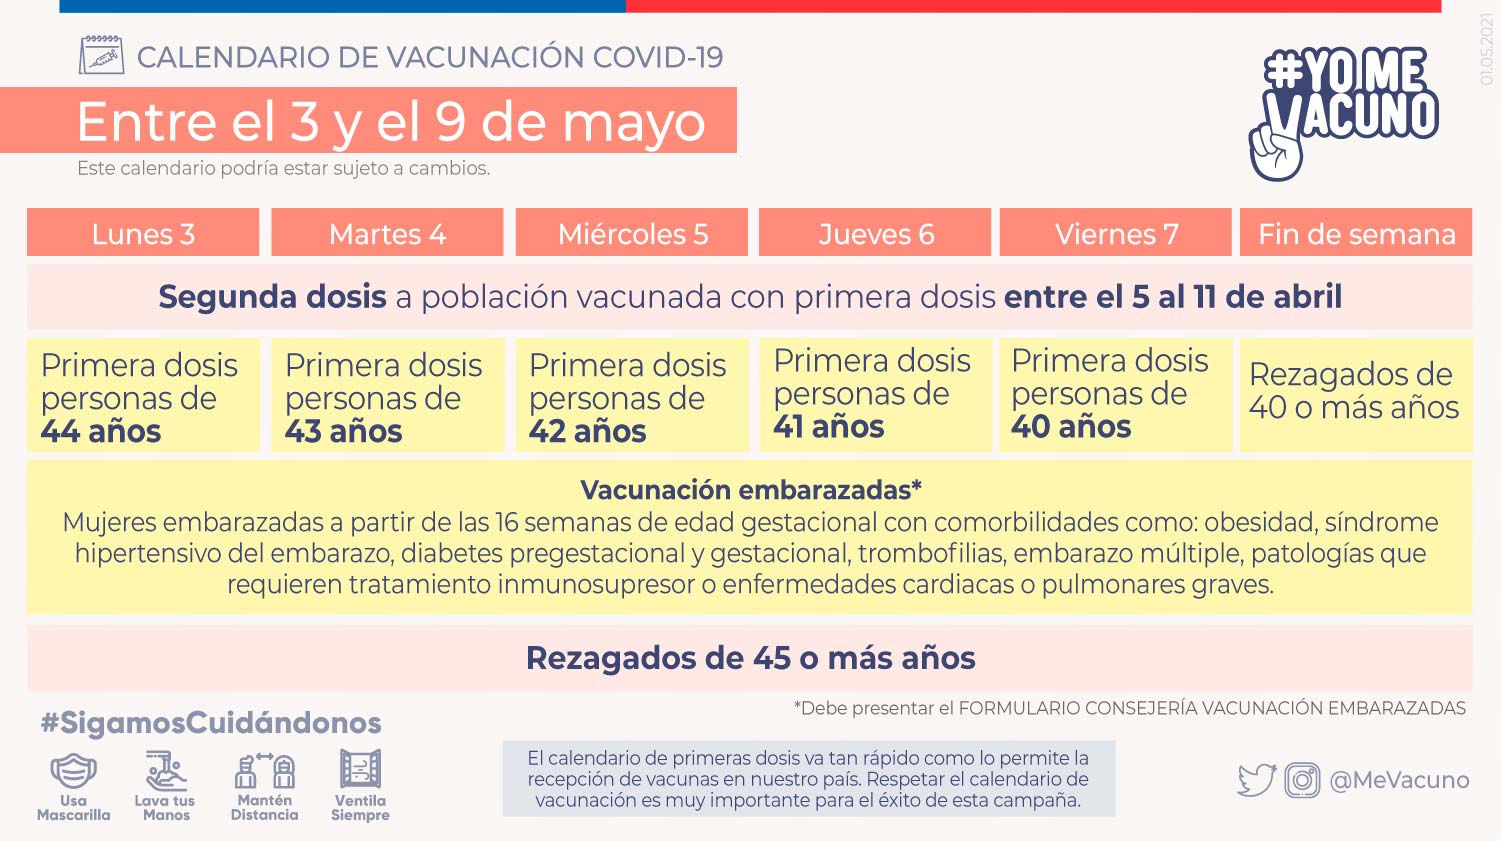 Calendario de vacunación COVID-19 – Semana del 3 al 9 de mayo 2021